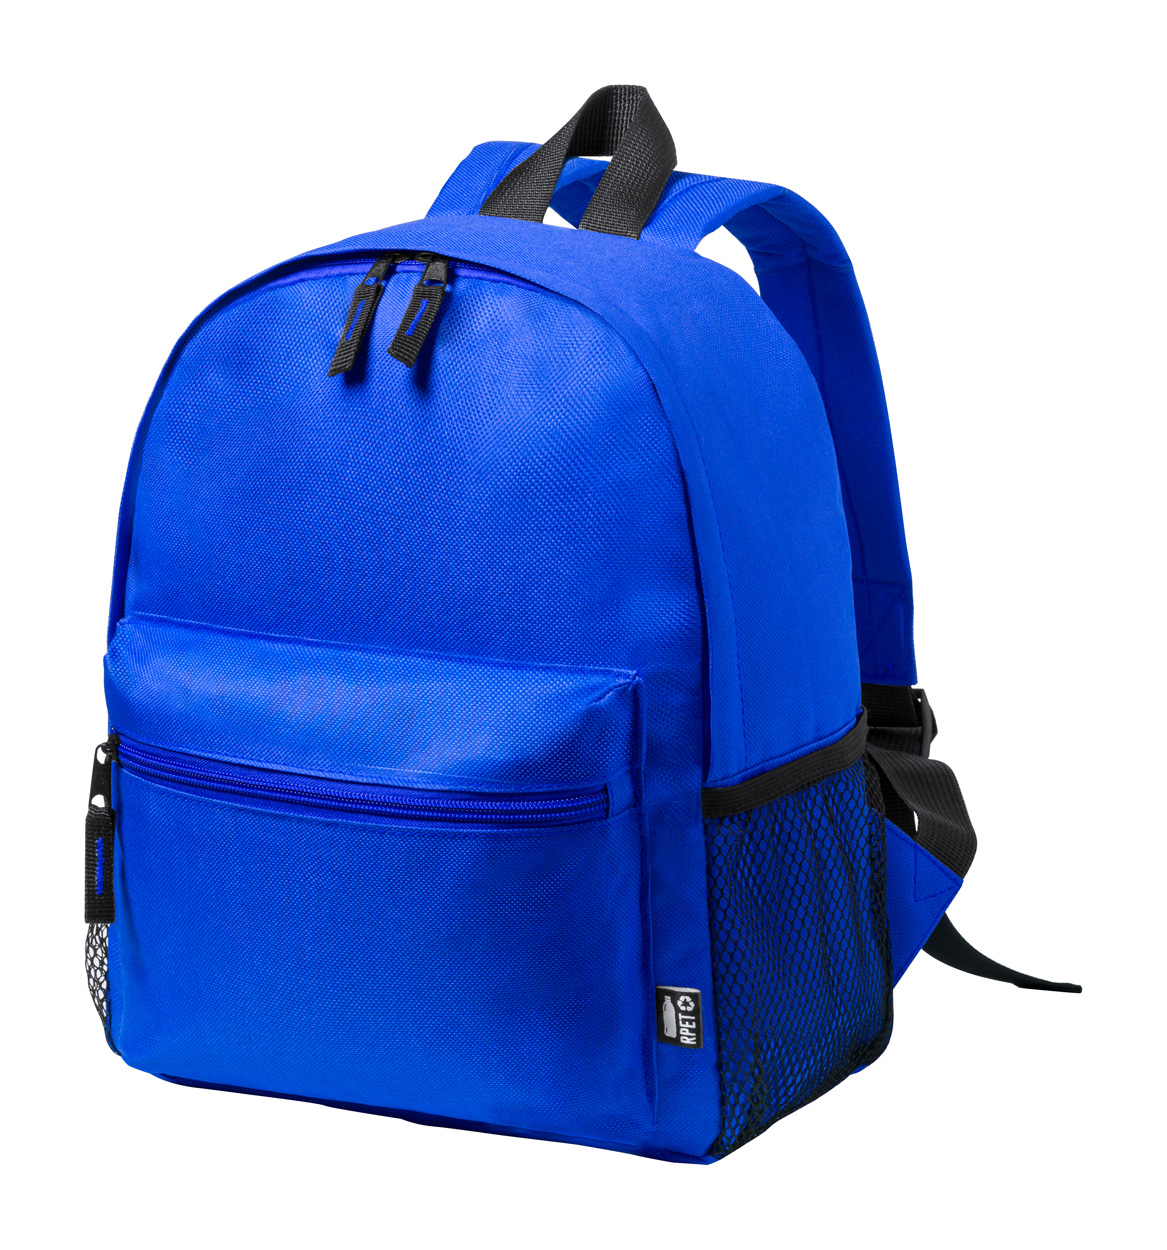 Maggie RPET-Rucksack für Kinder - blau